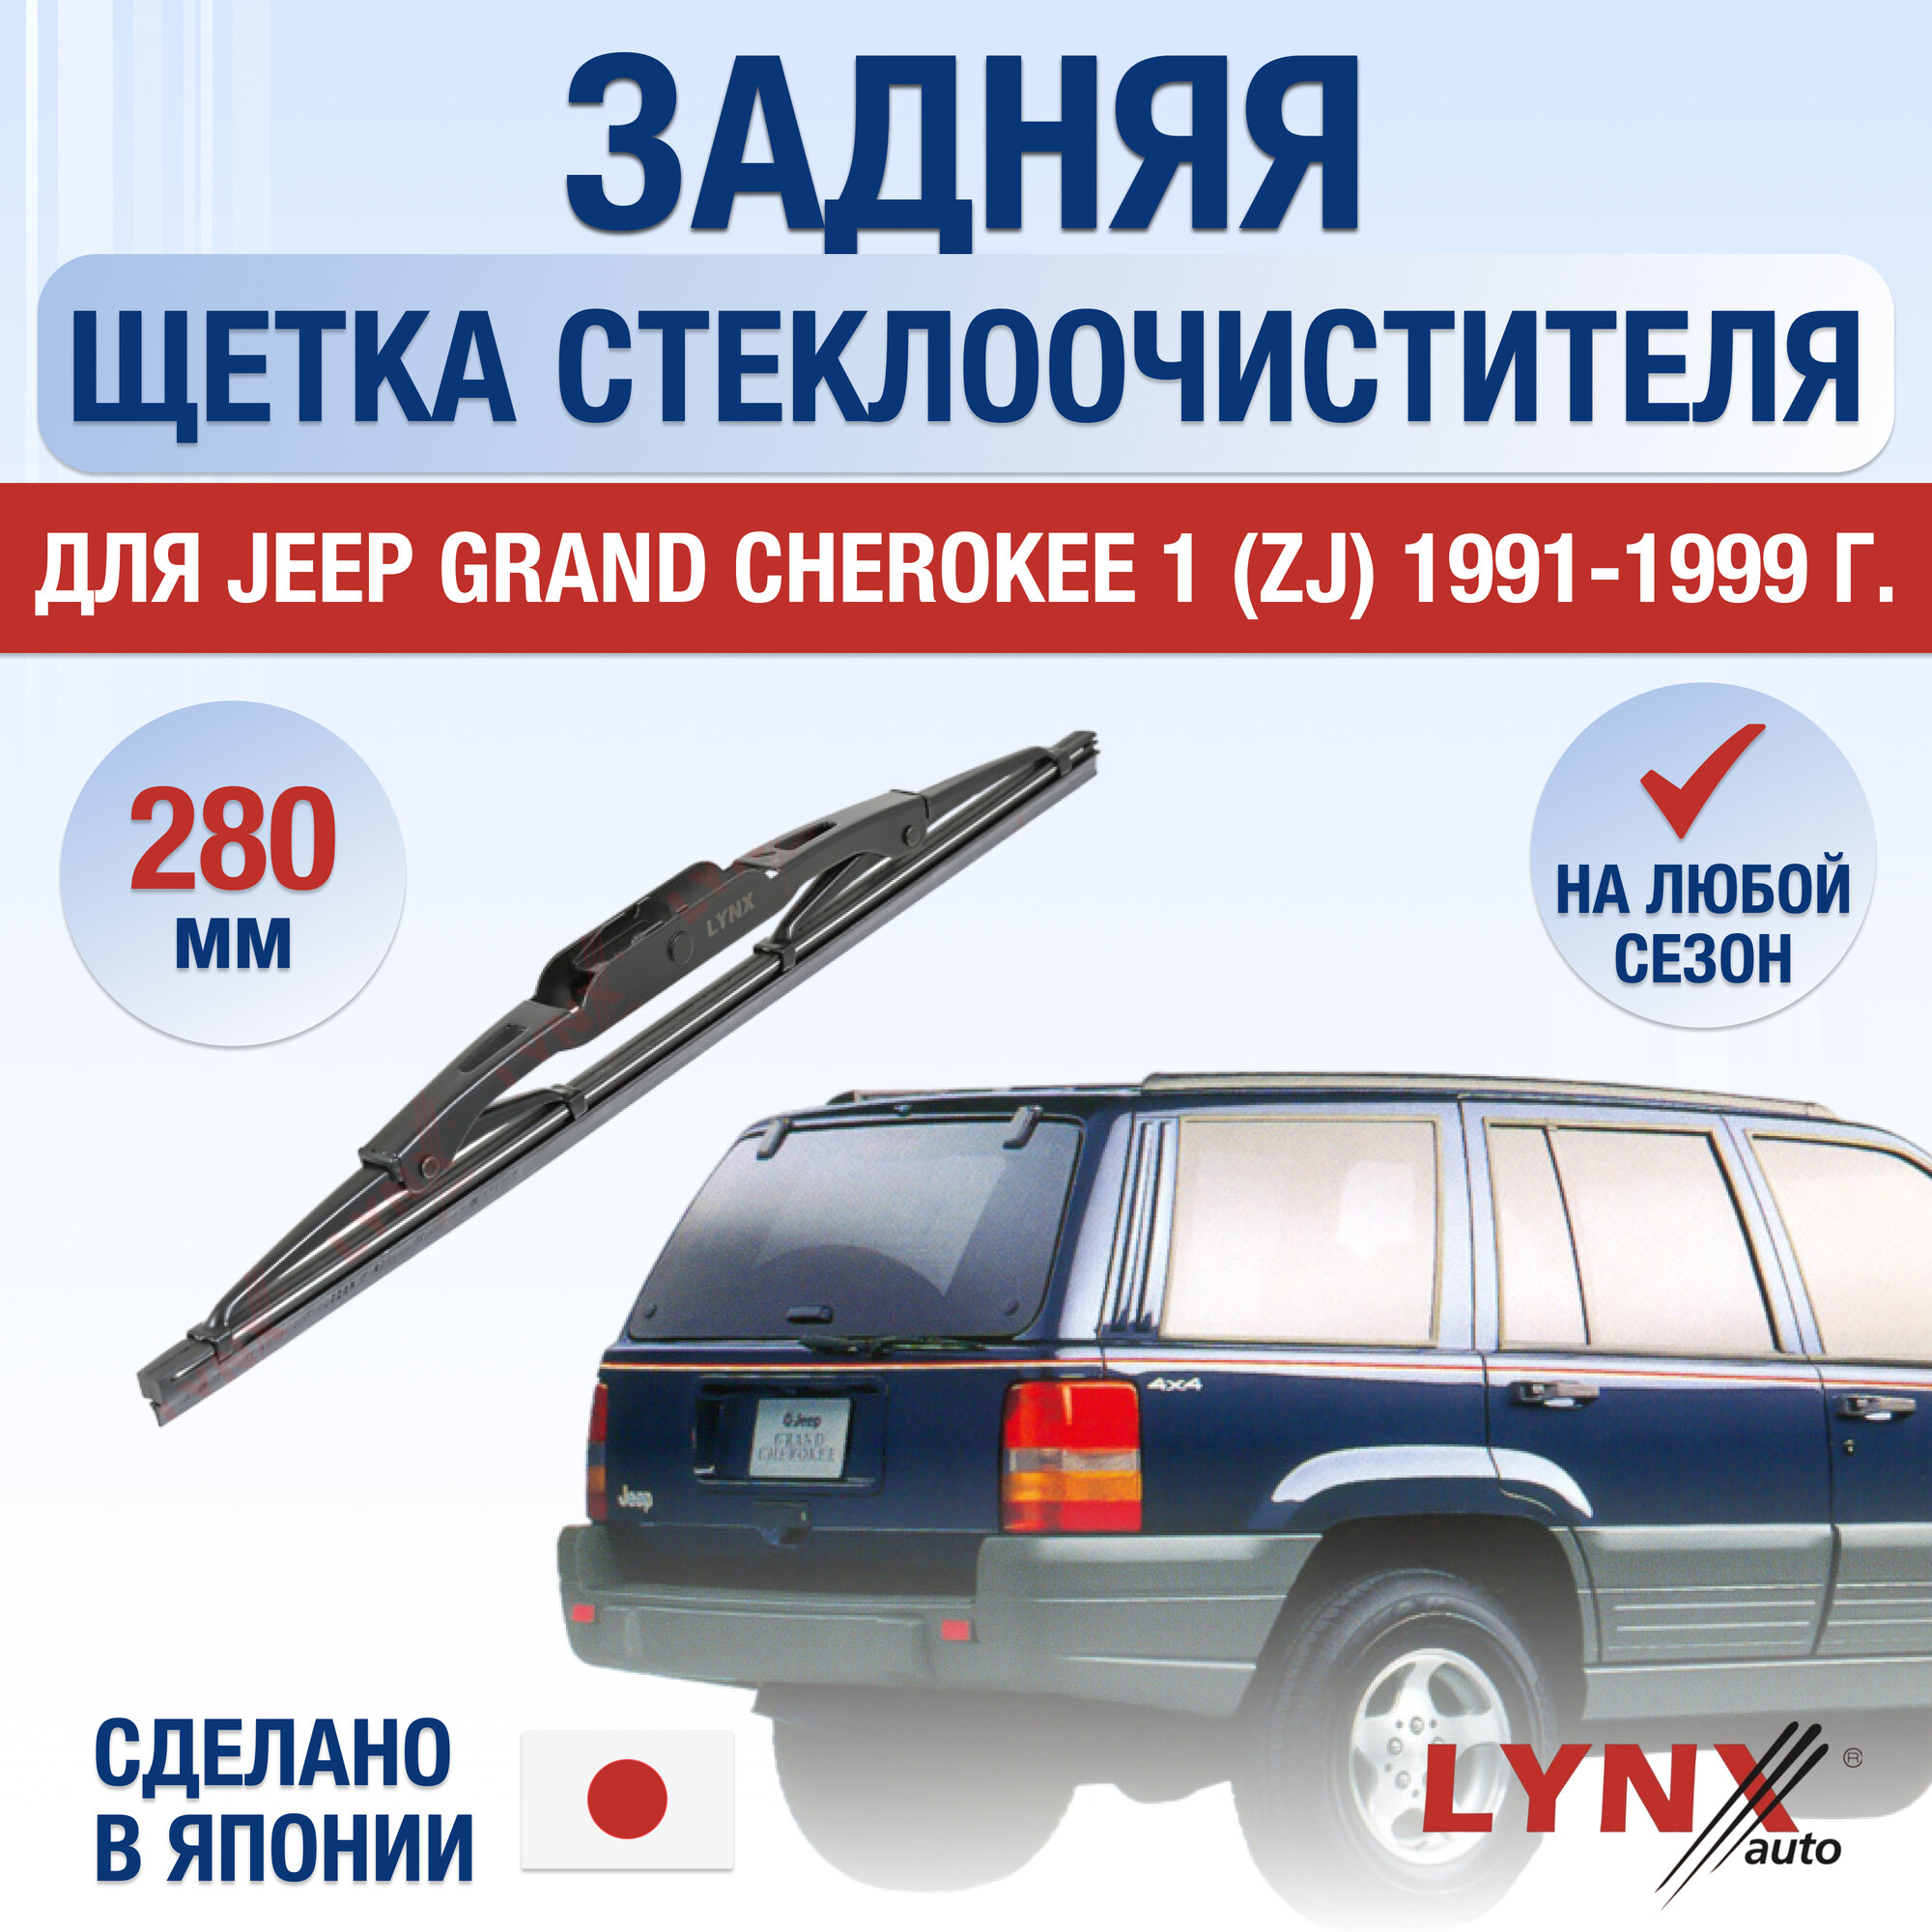 Задняя щетка стеклоочистителя для Jeep Grand Cherokee (1) ZJ / 1991 1992 1993 1994 1995 1996 1997 1998 1999 / Задний дворник 280 мм Джип Гранд Чероки